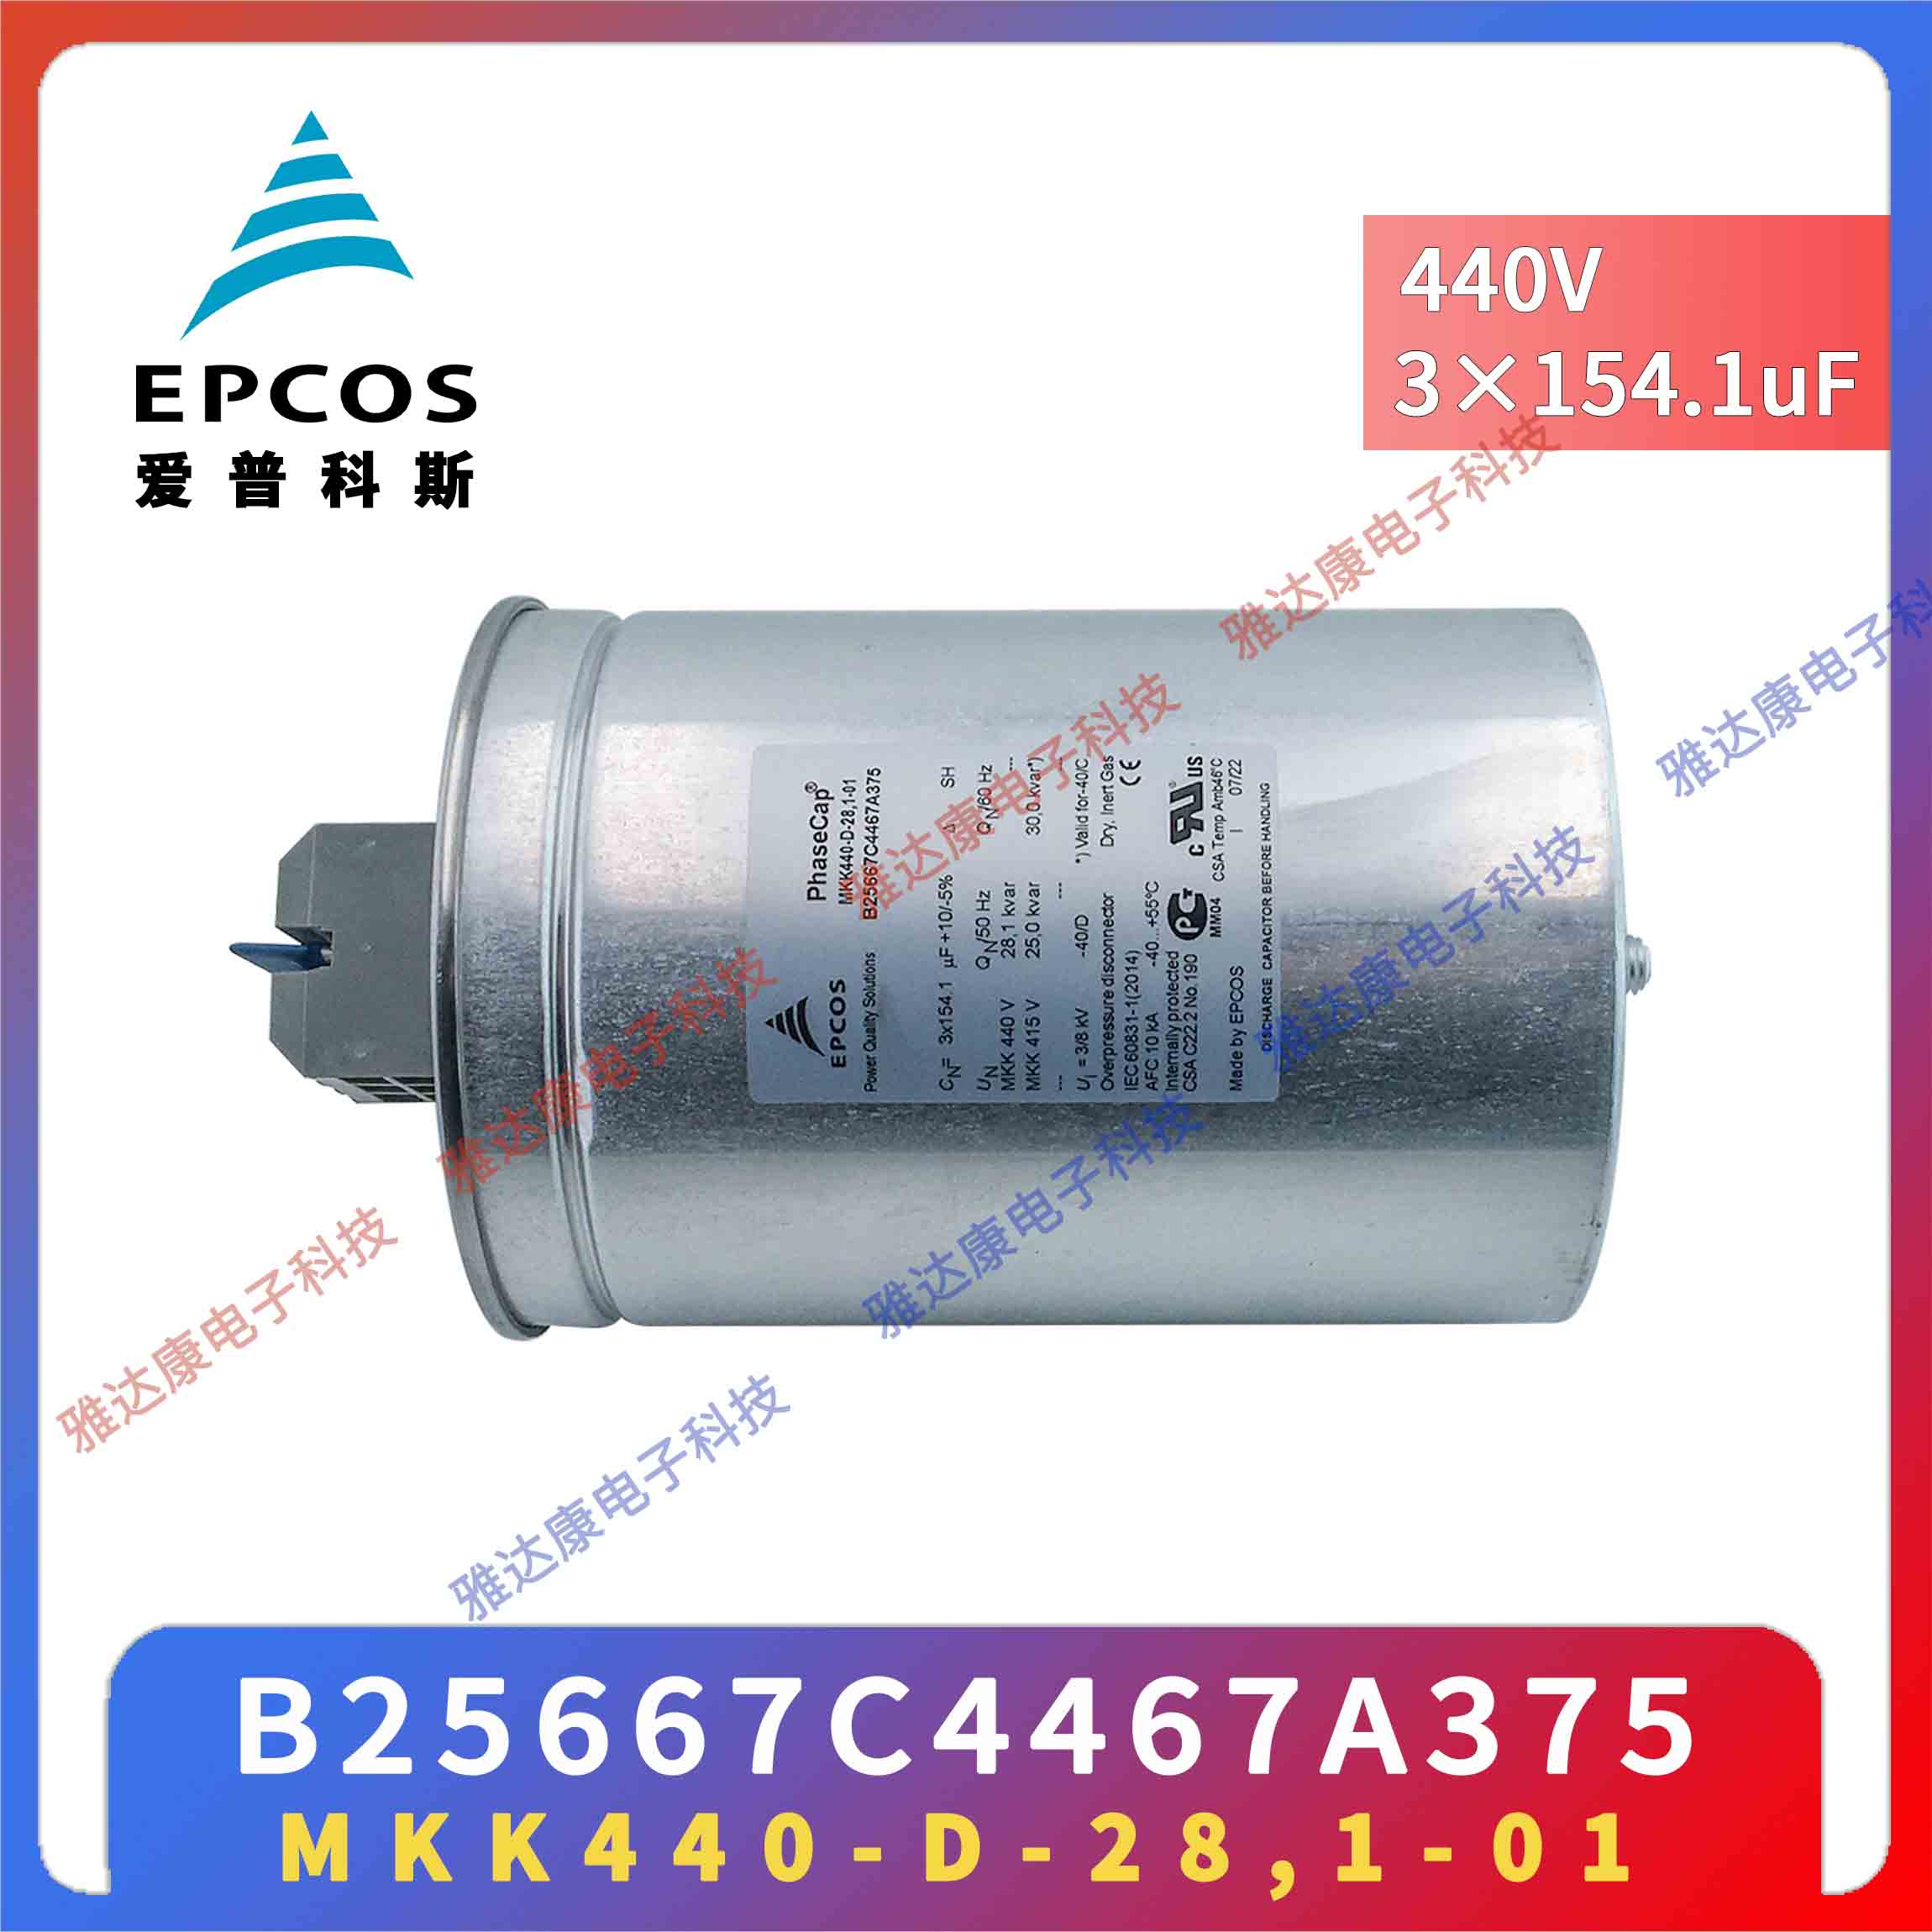 EPCOS电容器优势供应薄膜电容器 B25673A5302A02 MKK525-D-30-02图片